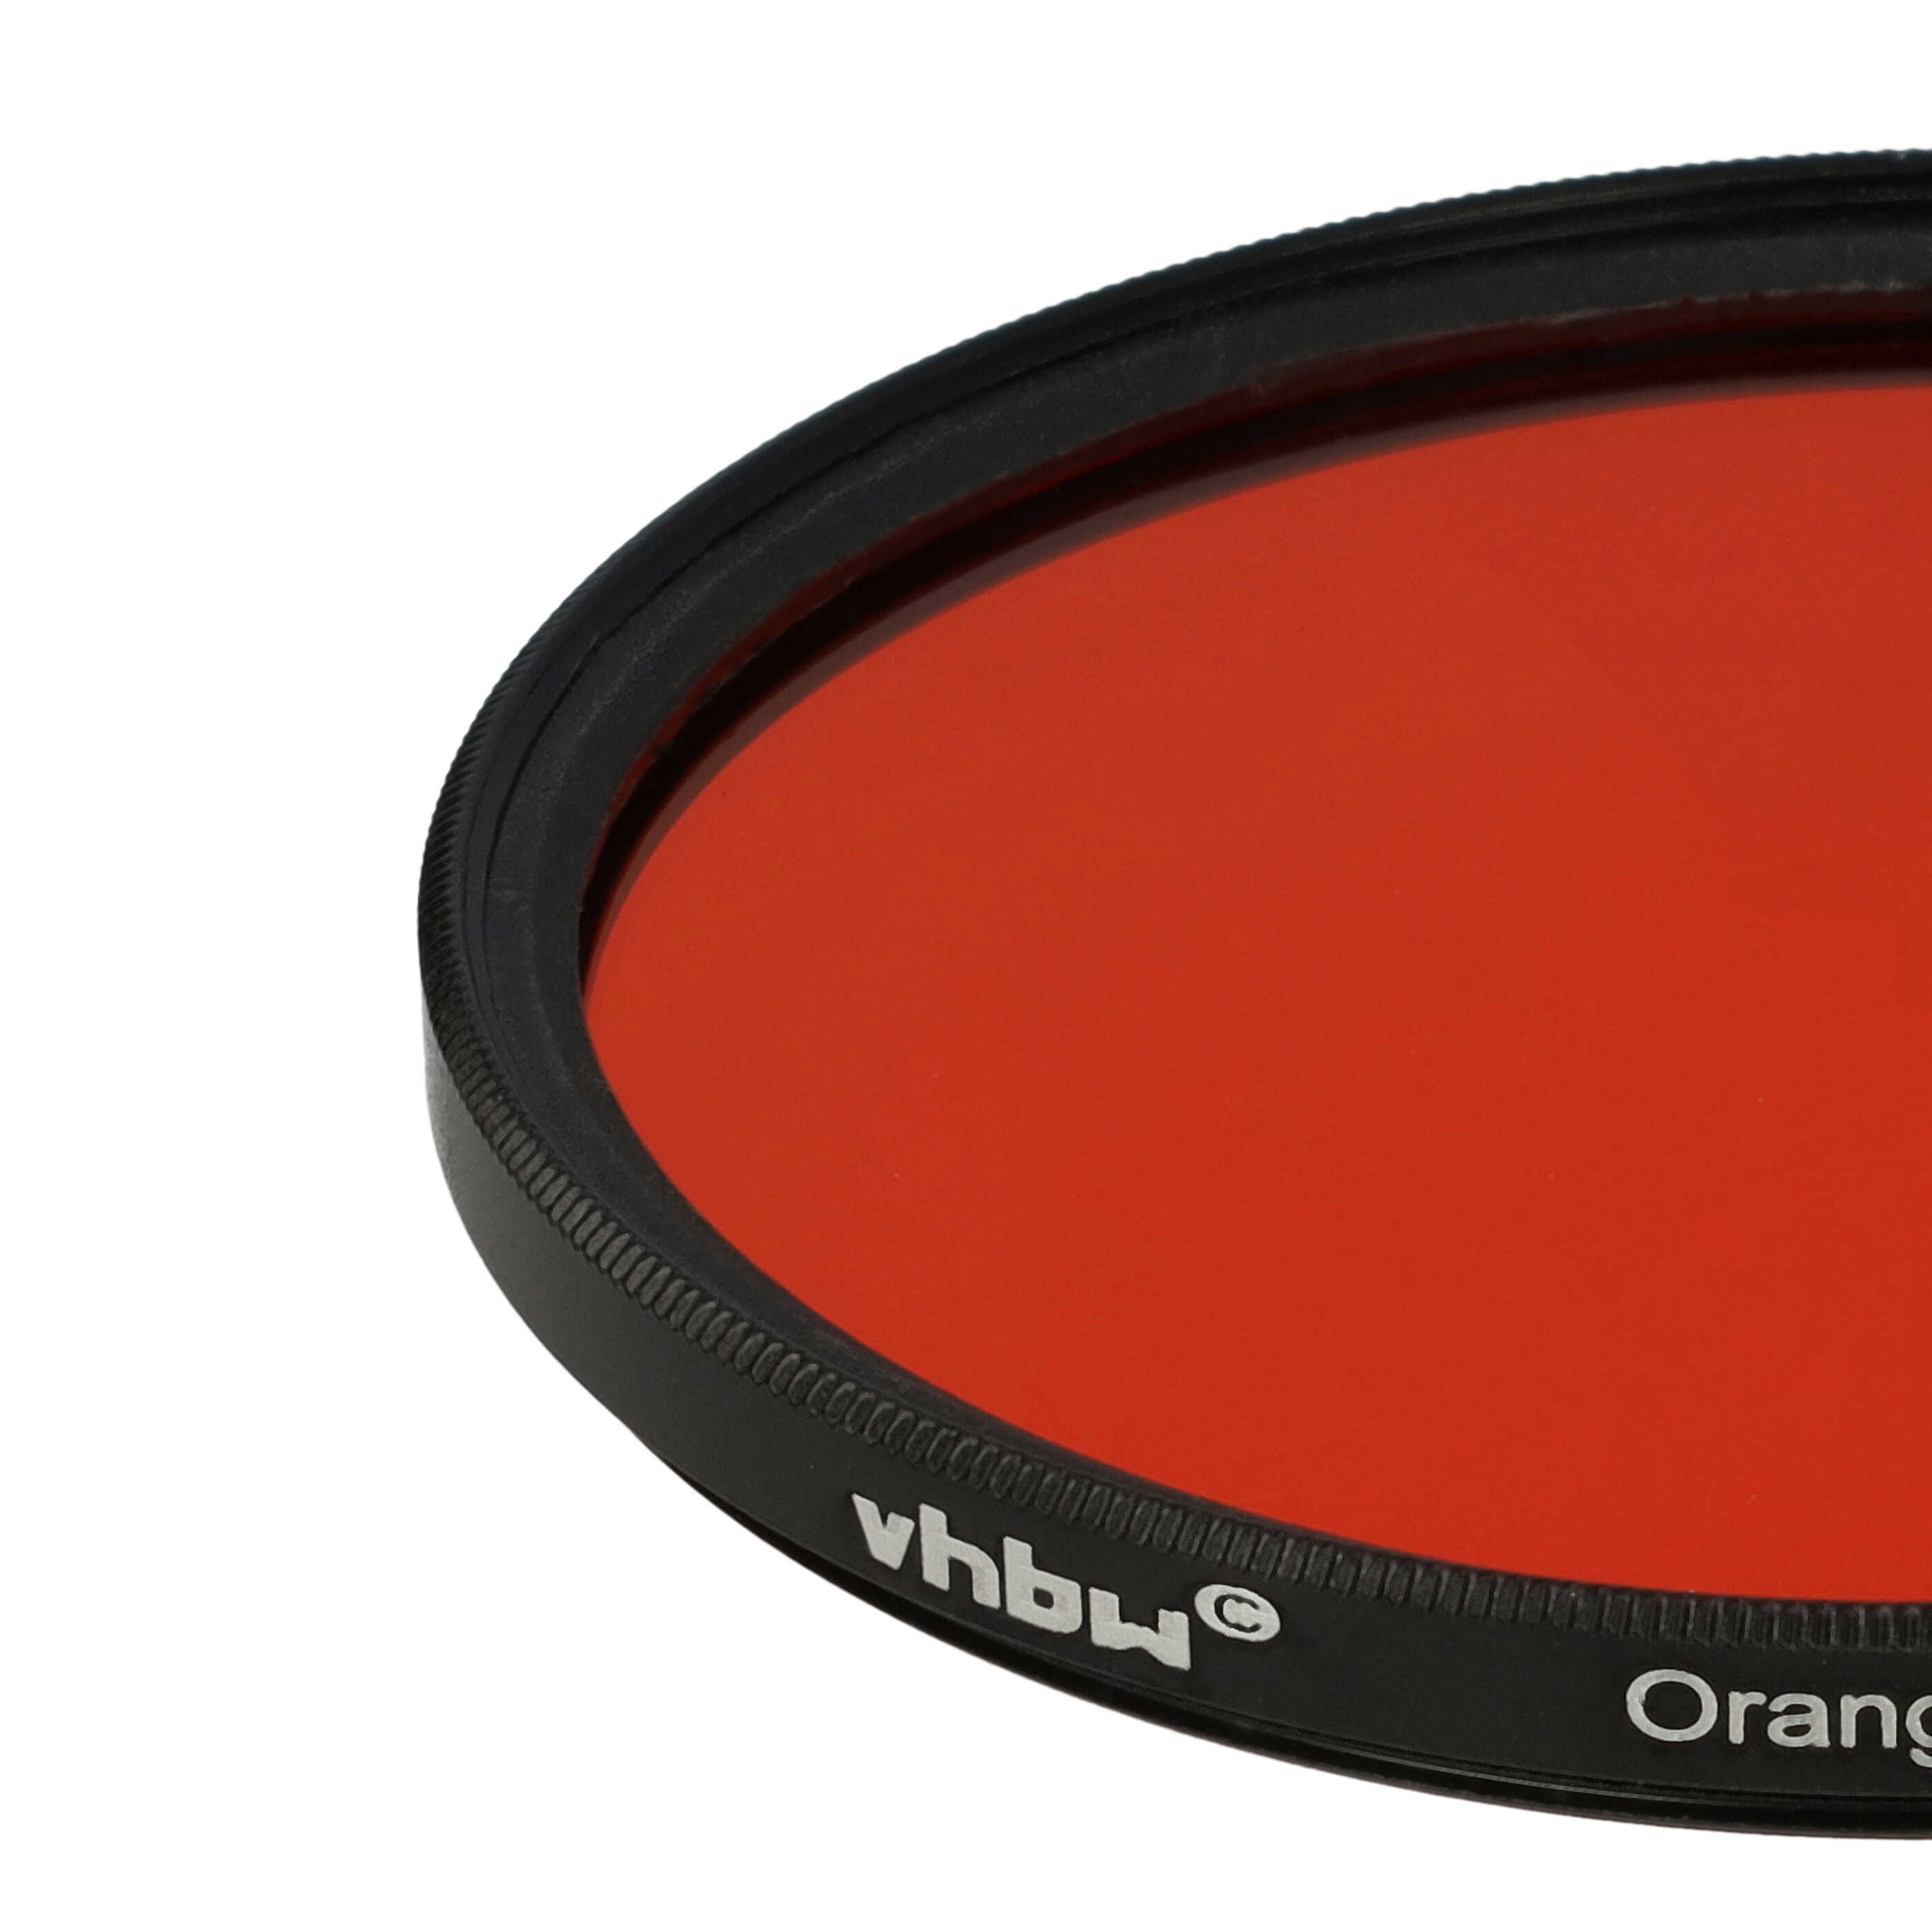 Filtro de color para objetivo de cámara con rosca de filtro de 67 mm - Filtro naranja